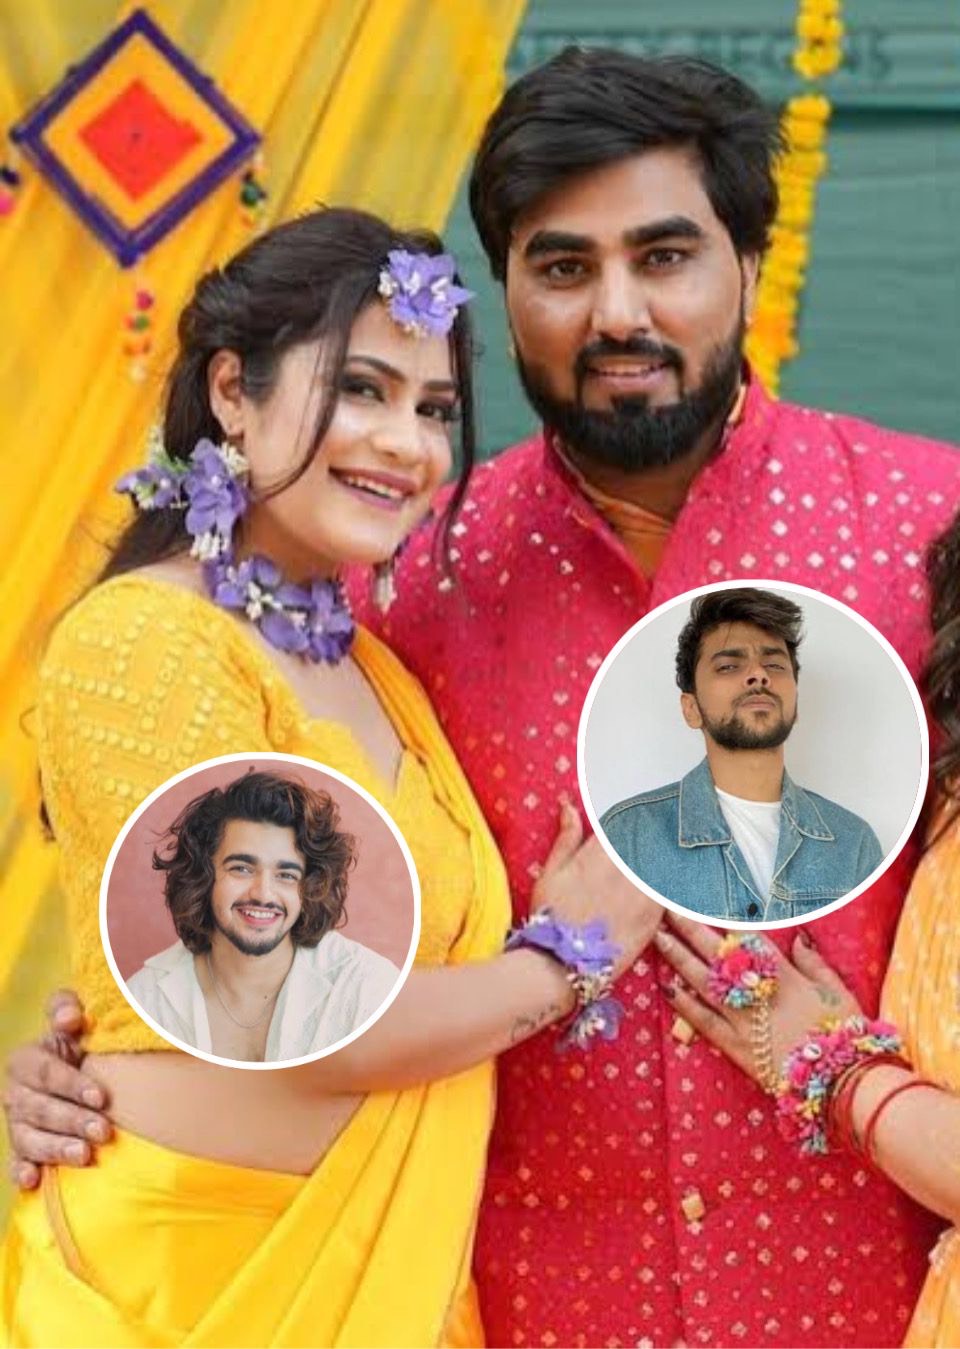 Lovekesh Kataria Reveals friend Vishal Pandey’s ‘Bhaiyya Bhagyashali Hai’ Comment About Kritika Malik, Sparking husband Armaan Malik's Fury